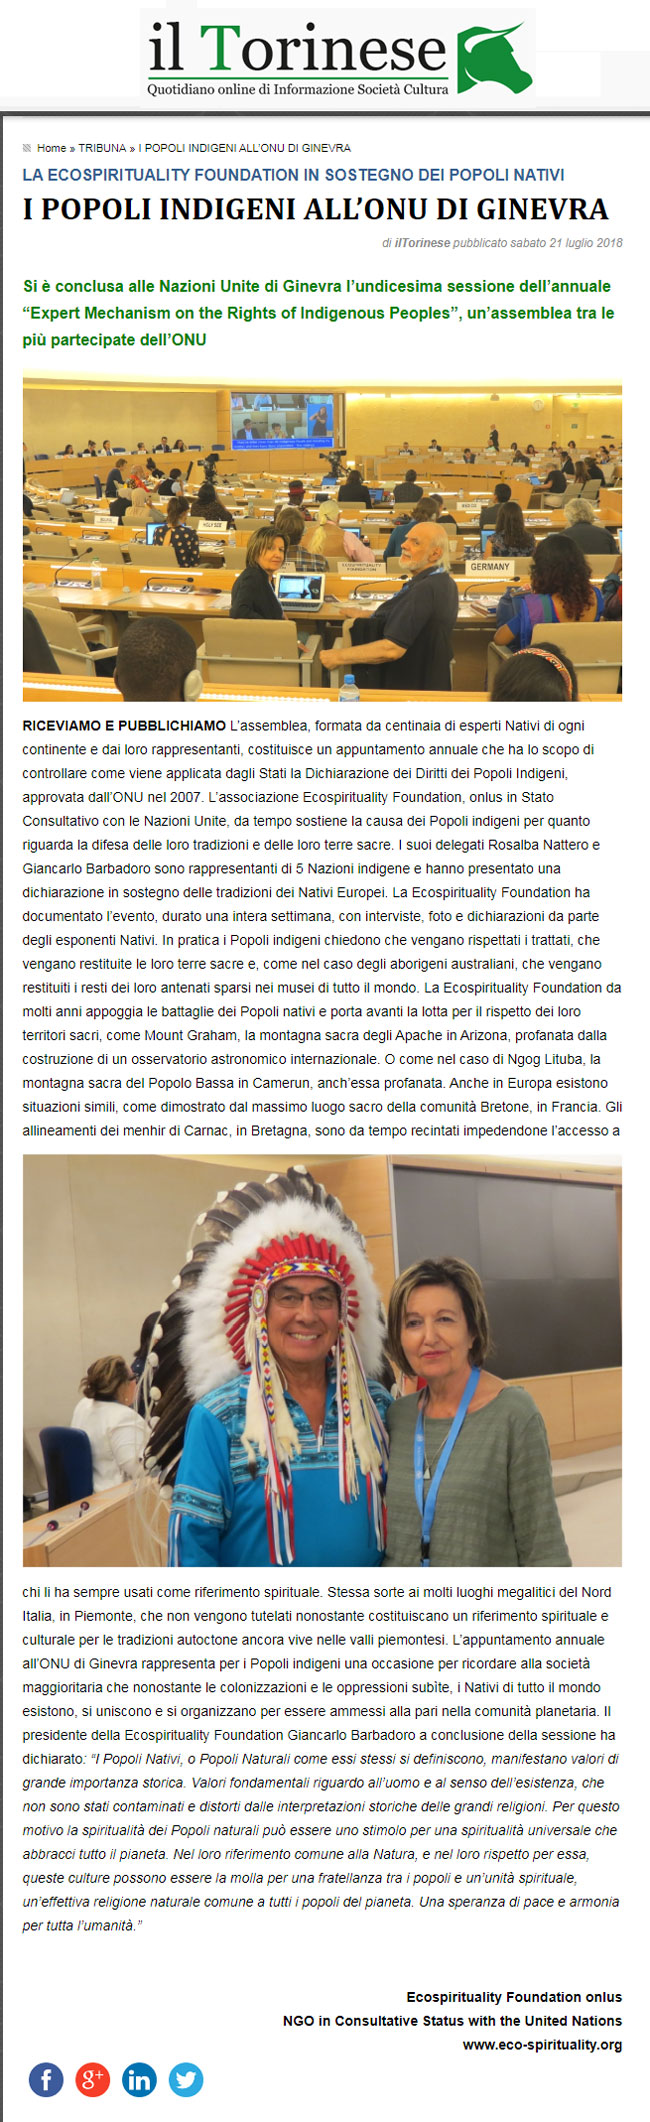 il-torinese-21-07-2018-i-popoli-indigeni-all-onu-di-ginevra